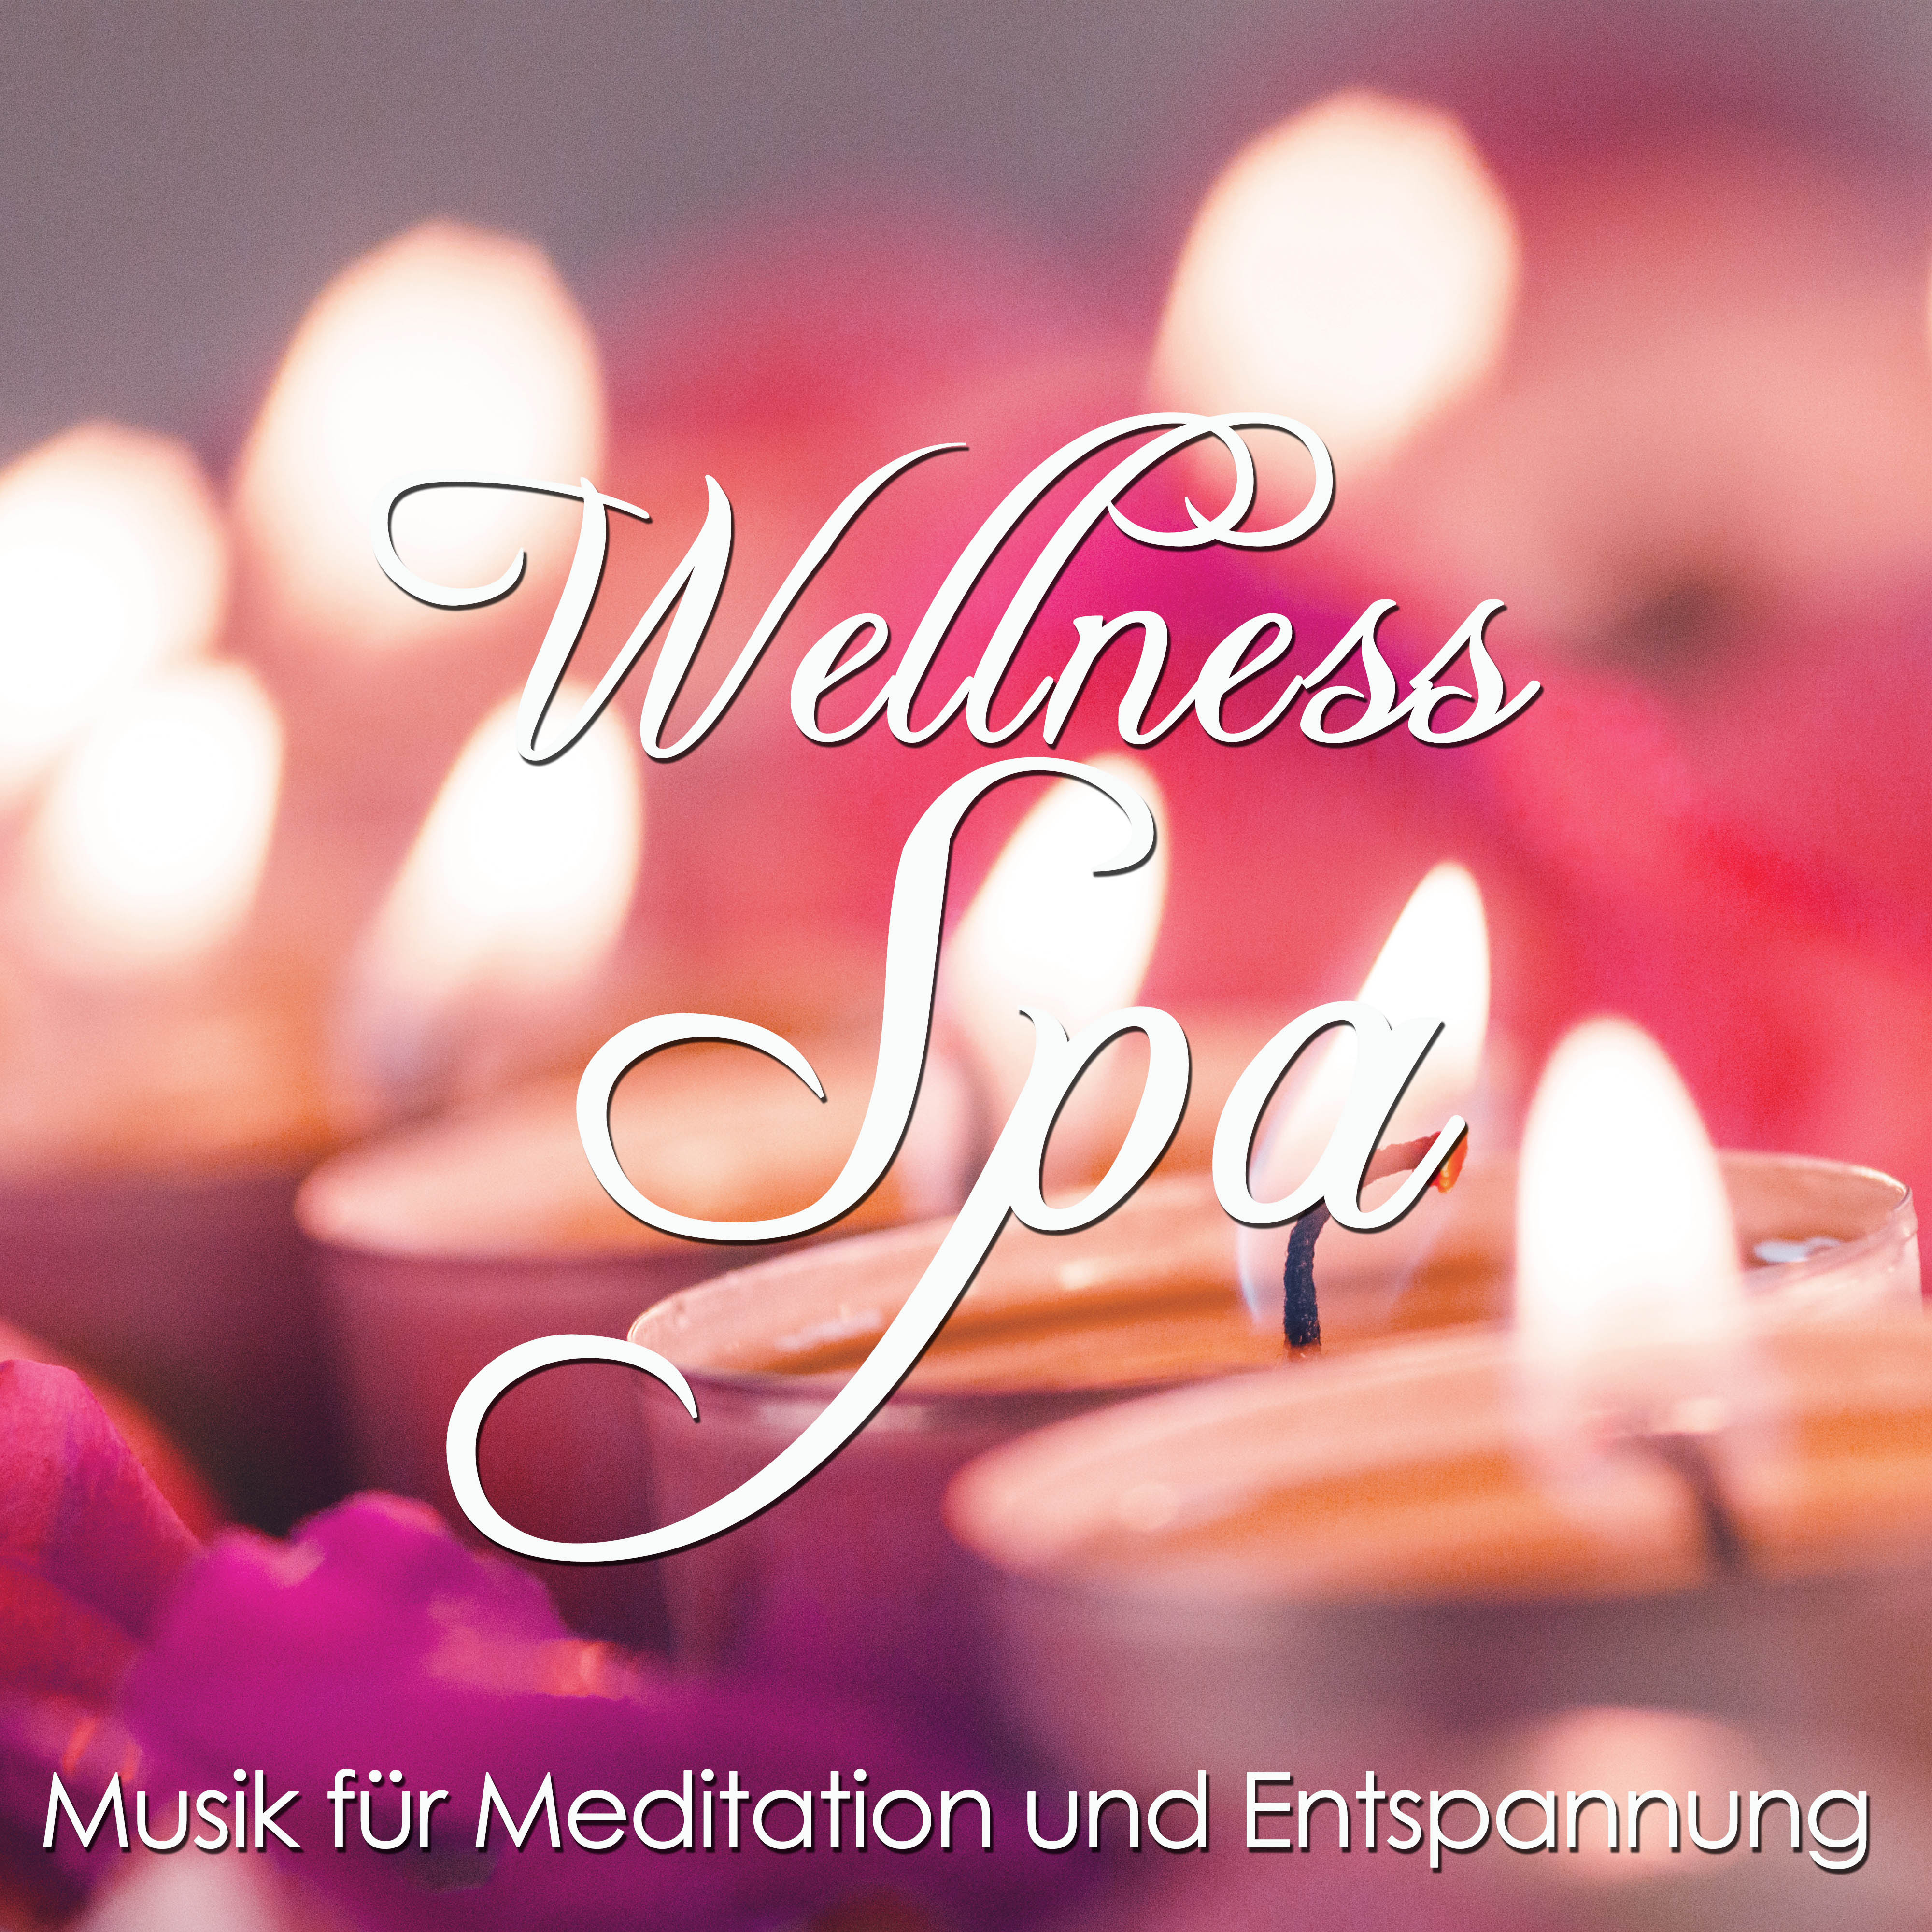 Wellness Spa: Musik fü r Meditation und Entspannung fü r Tiefenentspannung, Achtsamkeit, Achtsamkeit und Stress Abbauen